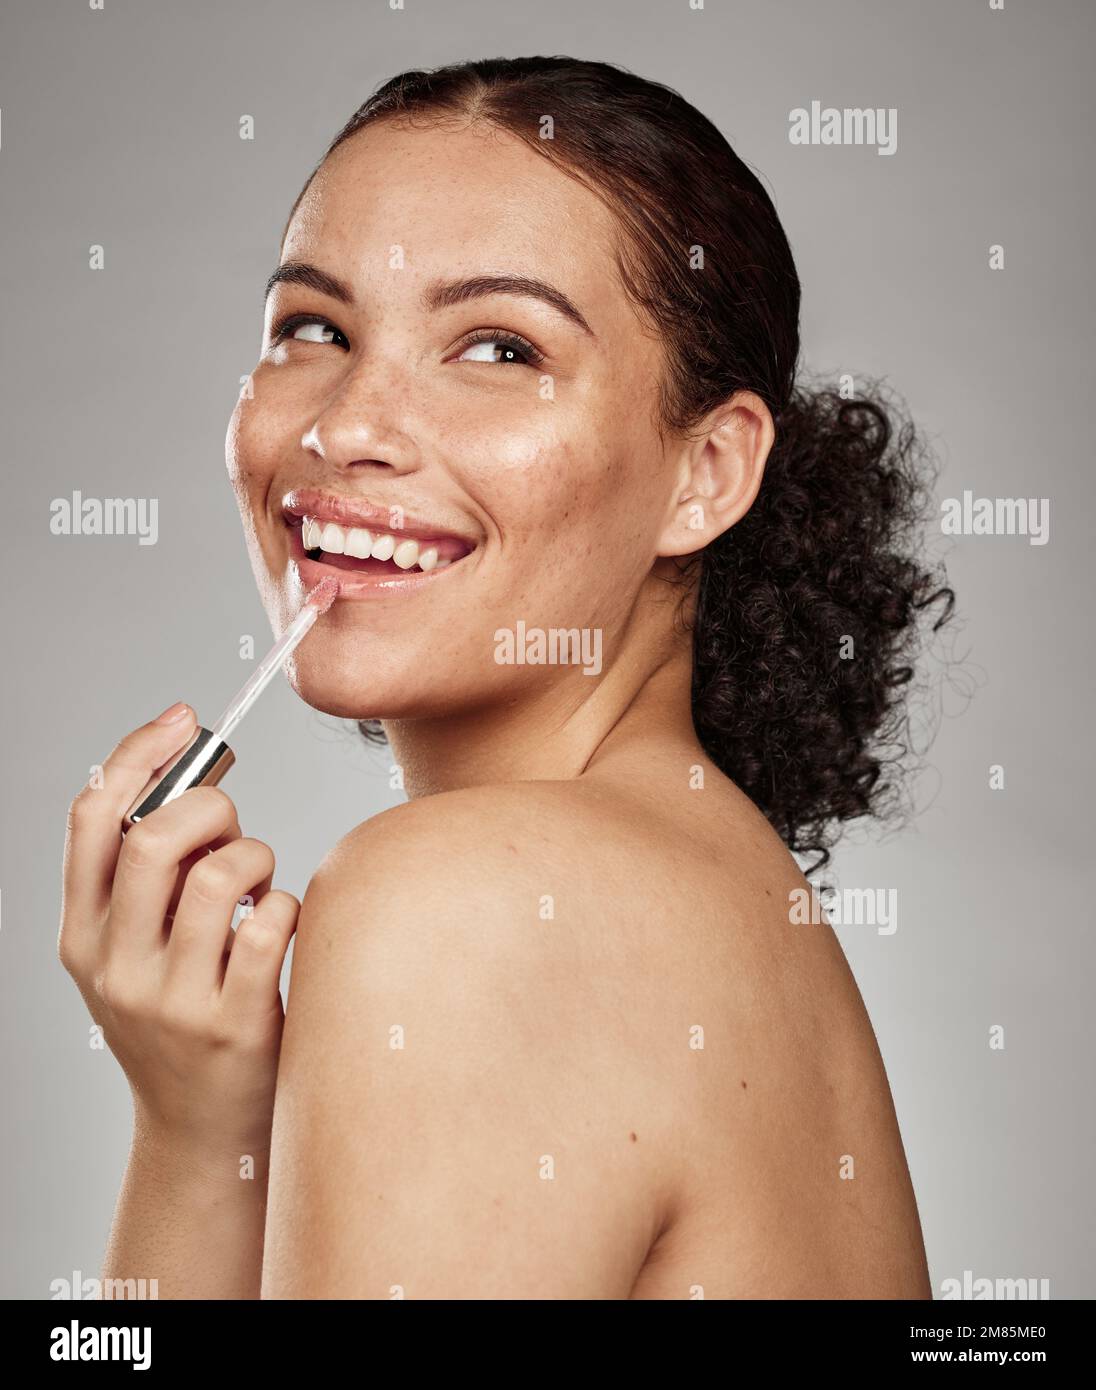 Frauen-, Lippenstift- und Kosmetikartikel für die Hautpflege oder Leuchten vor grauem Studiohintergrund. Glückliche Frau, die mit Zähnen lächelt, in Befriedigung für Stockfoto